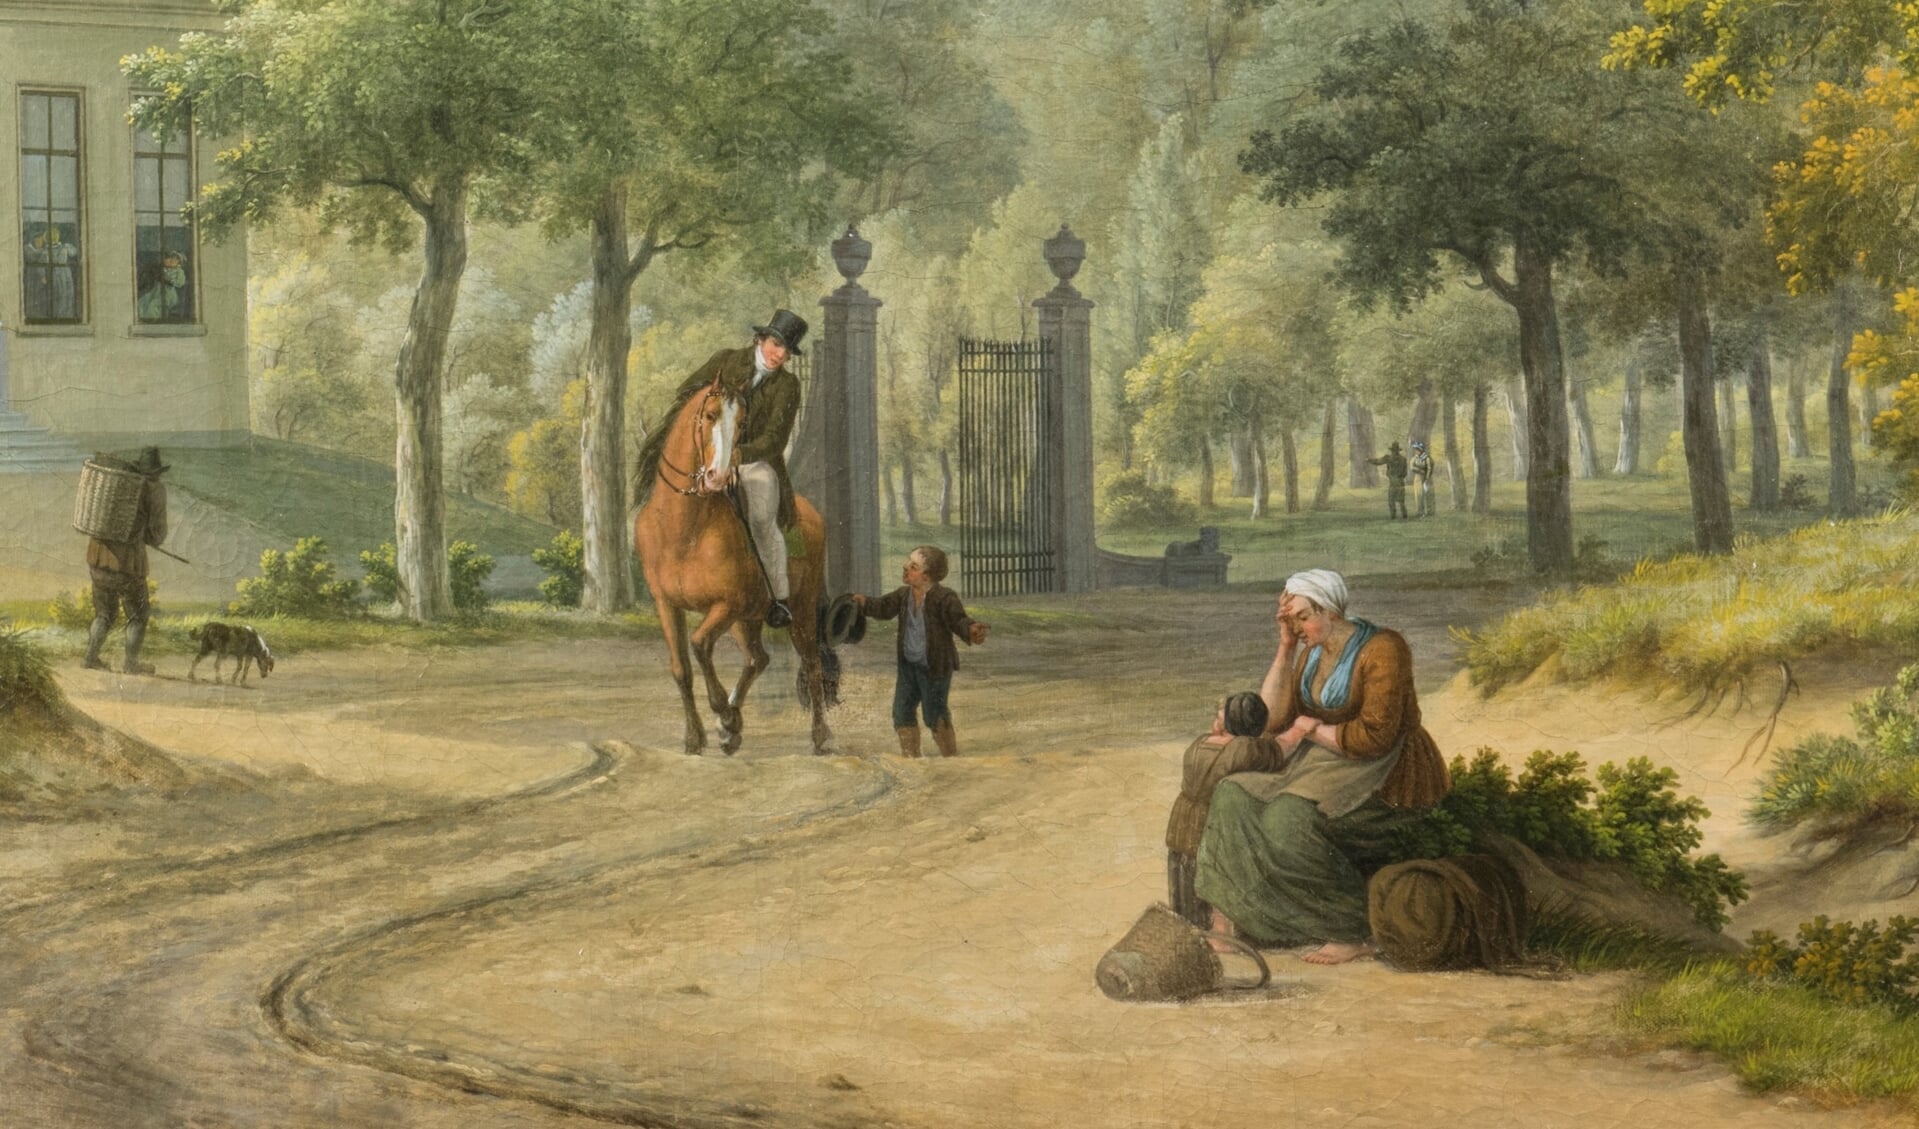 Mogelijk verwijst het bedelende jongetje op de wandschildering in de tuinkamer van het Honig Breethuis naar de steun die de familie Breet aan armen en behoeftigen gaf. Wandschildering van Willem Uppink uit 1830.